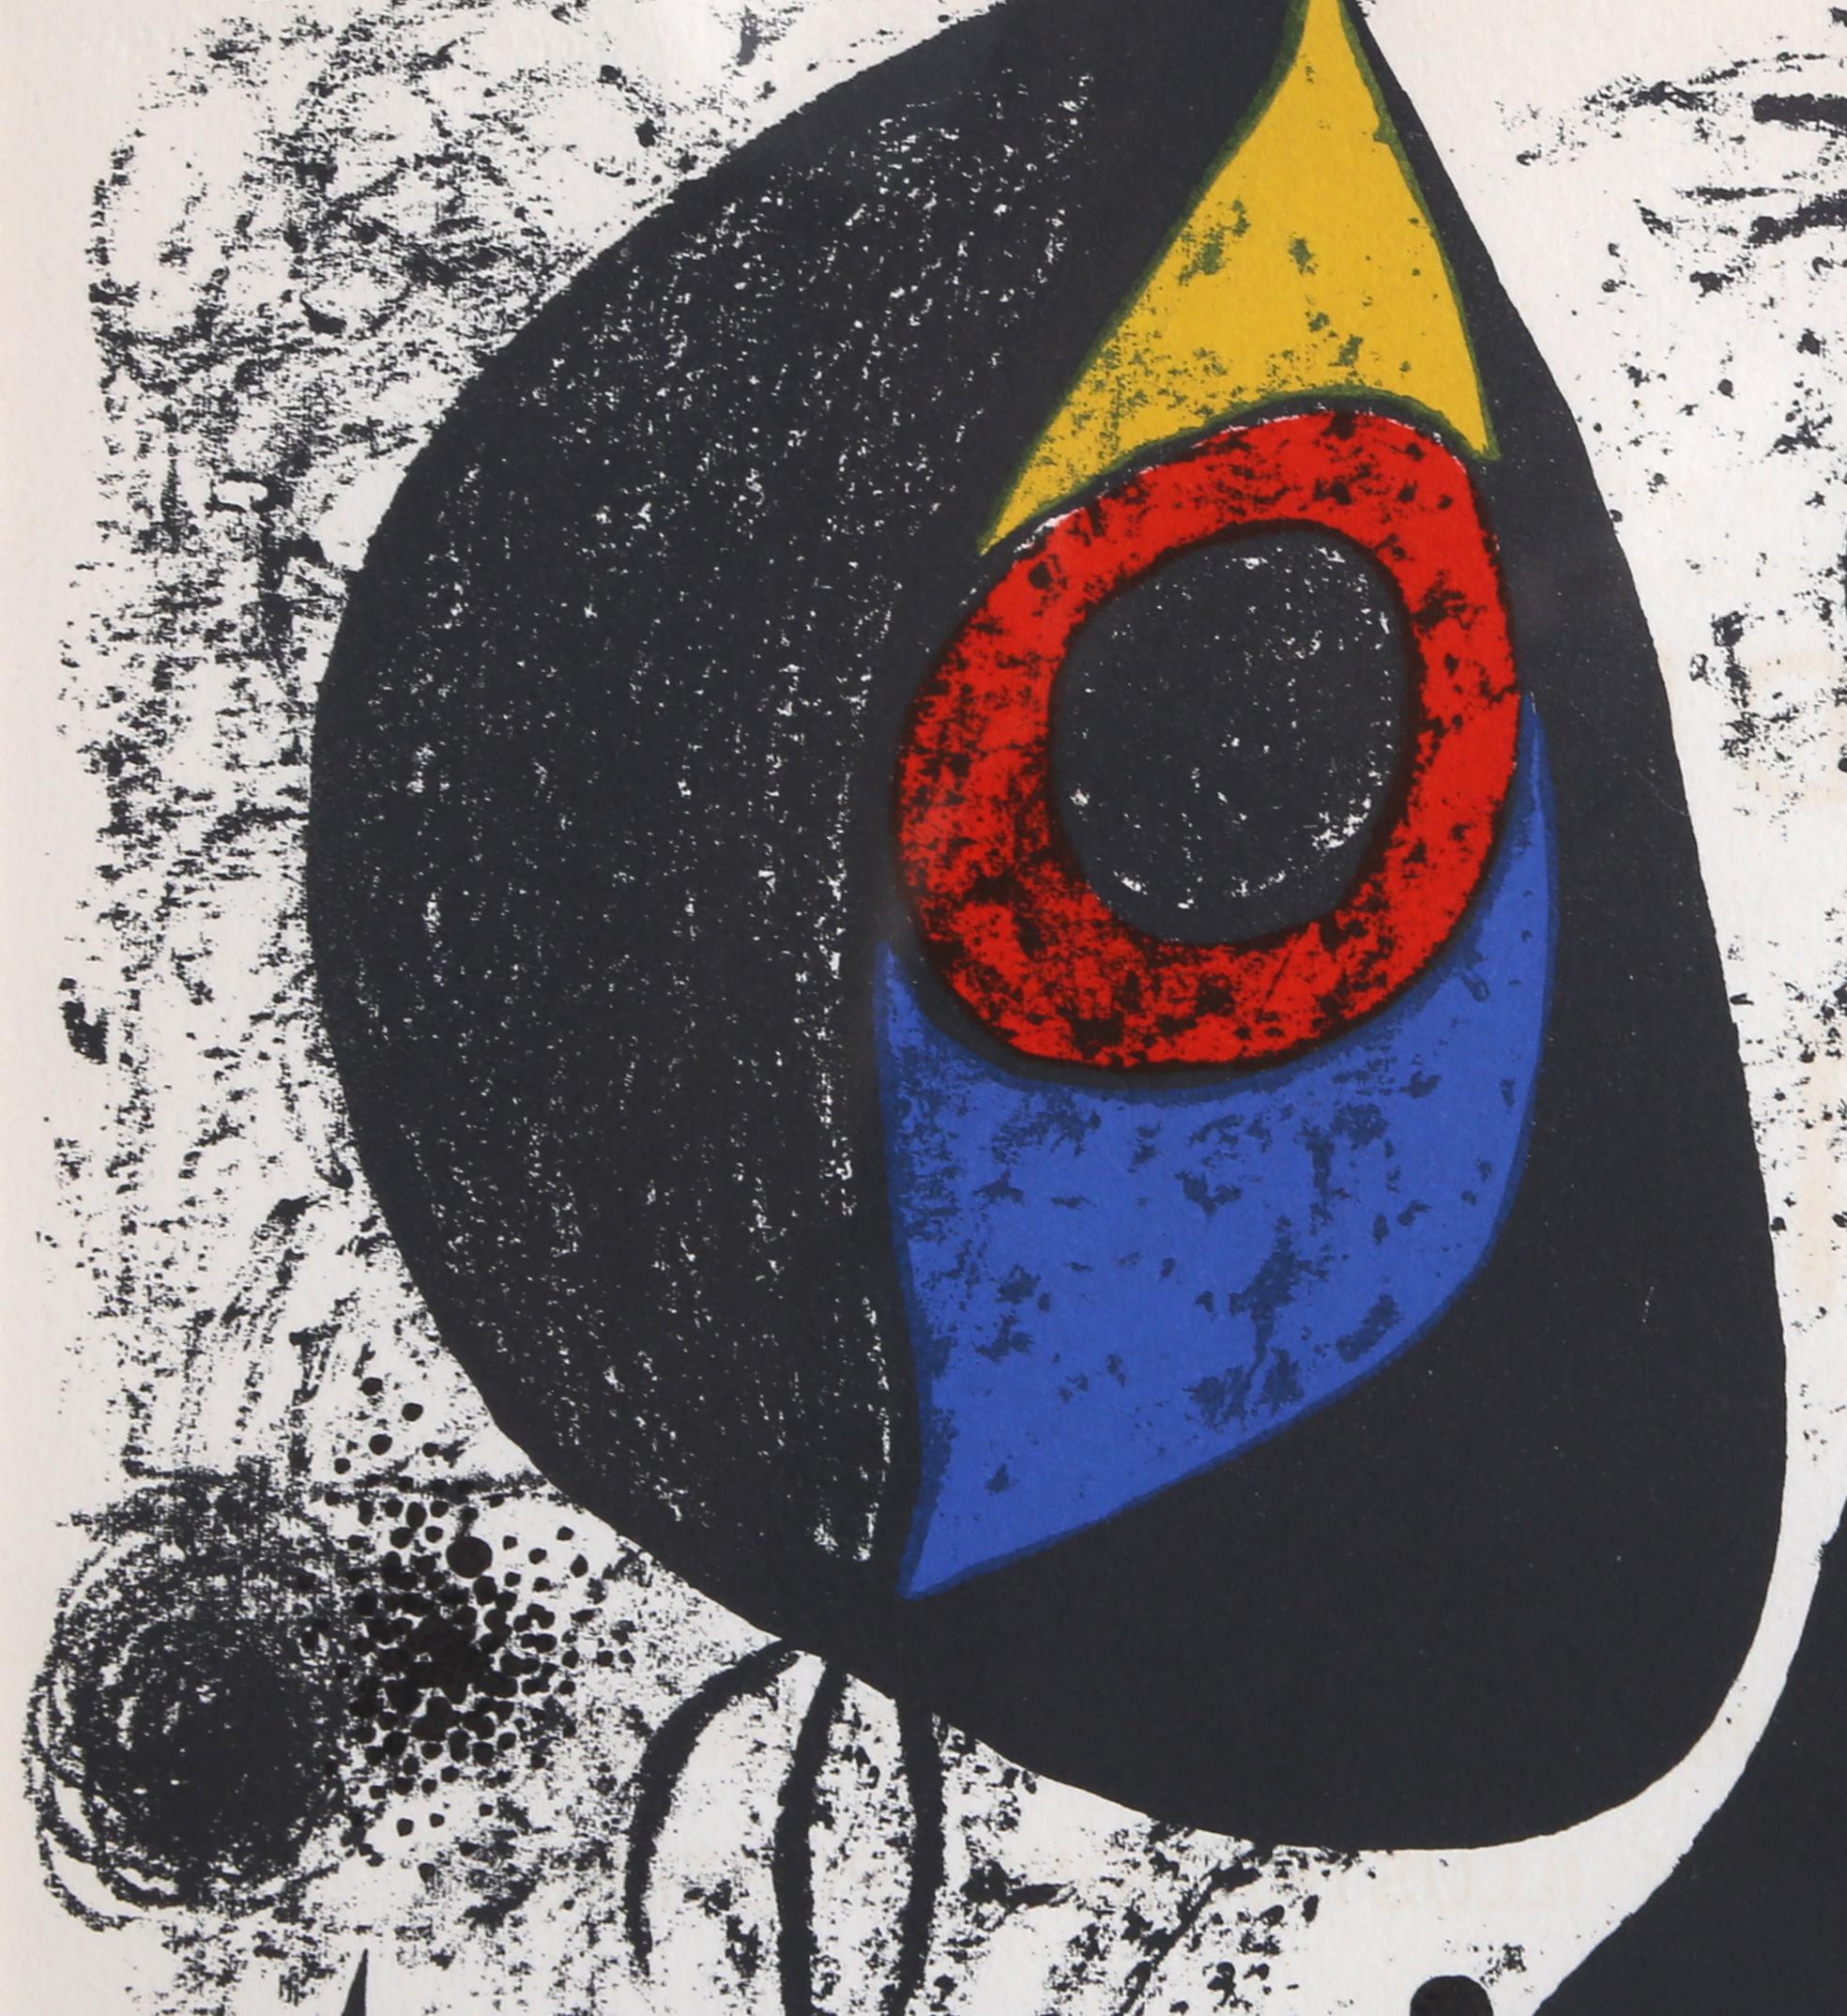 Miro a l'Encre I, Lithograph by Joan Miró 1